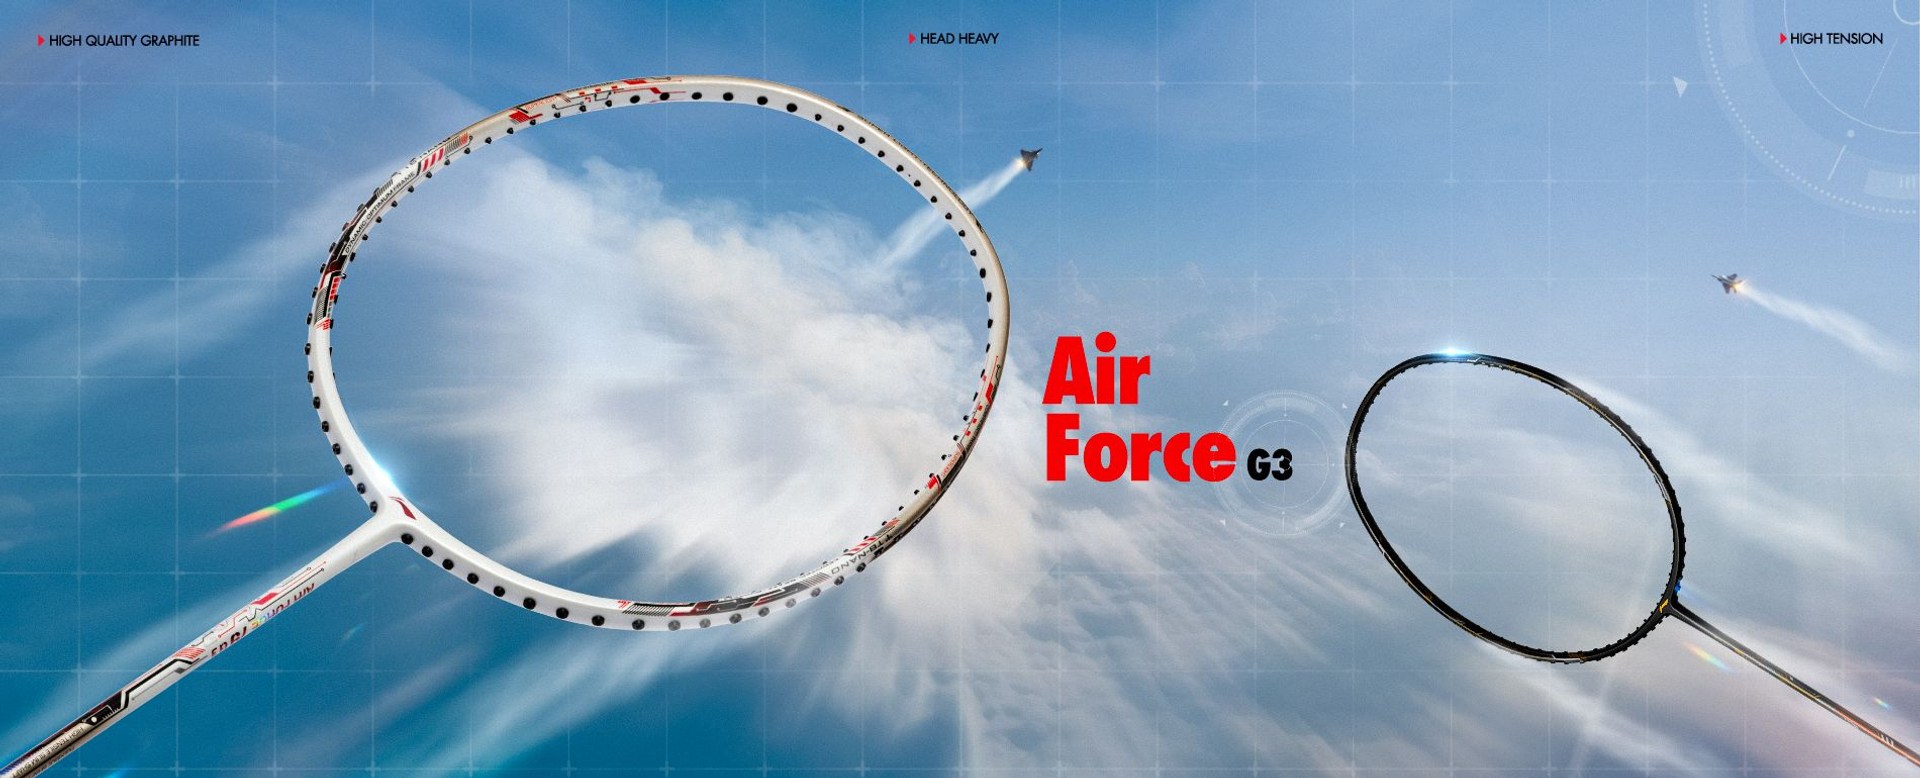 Air Force G3